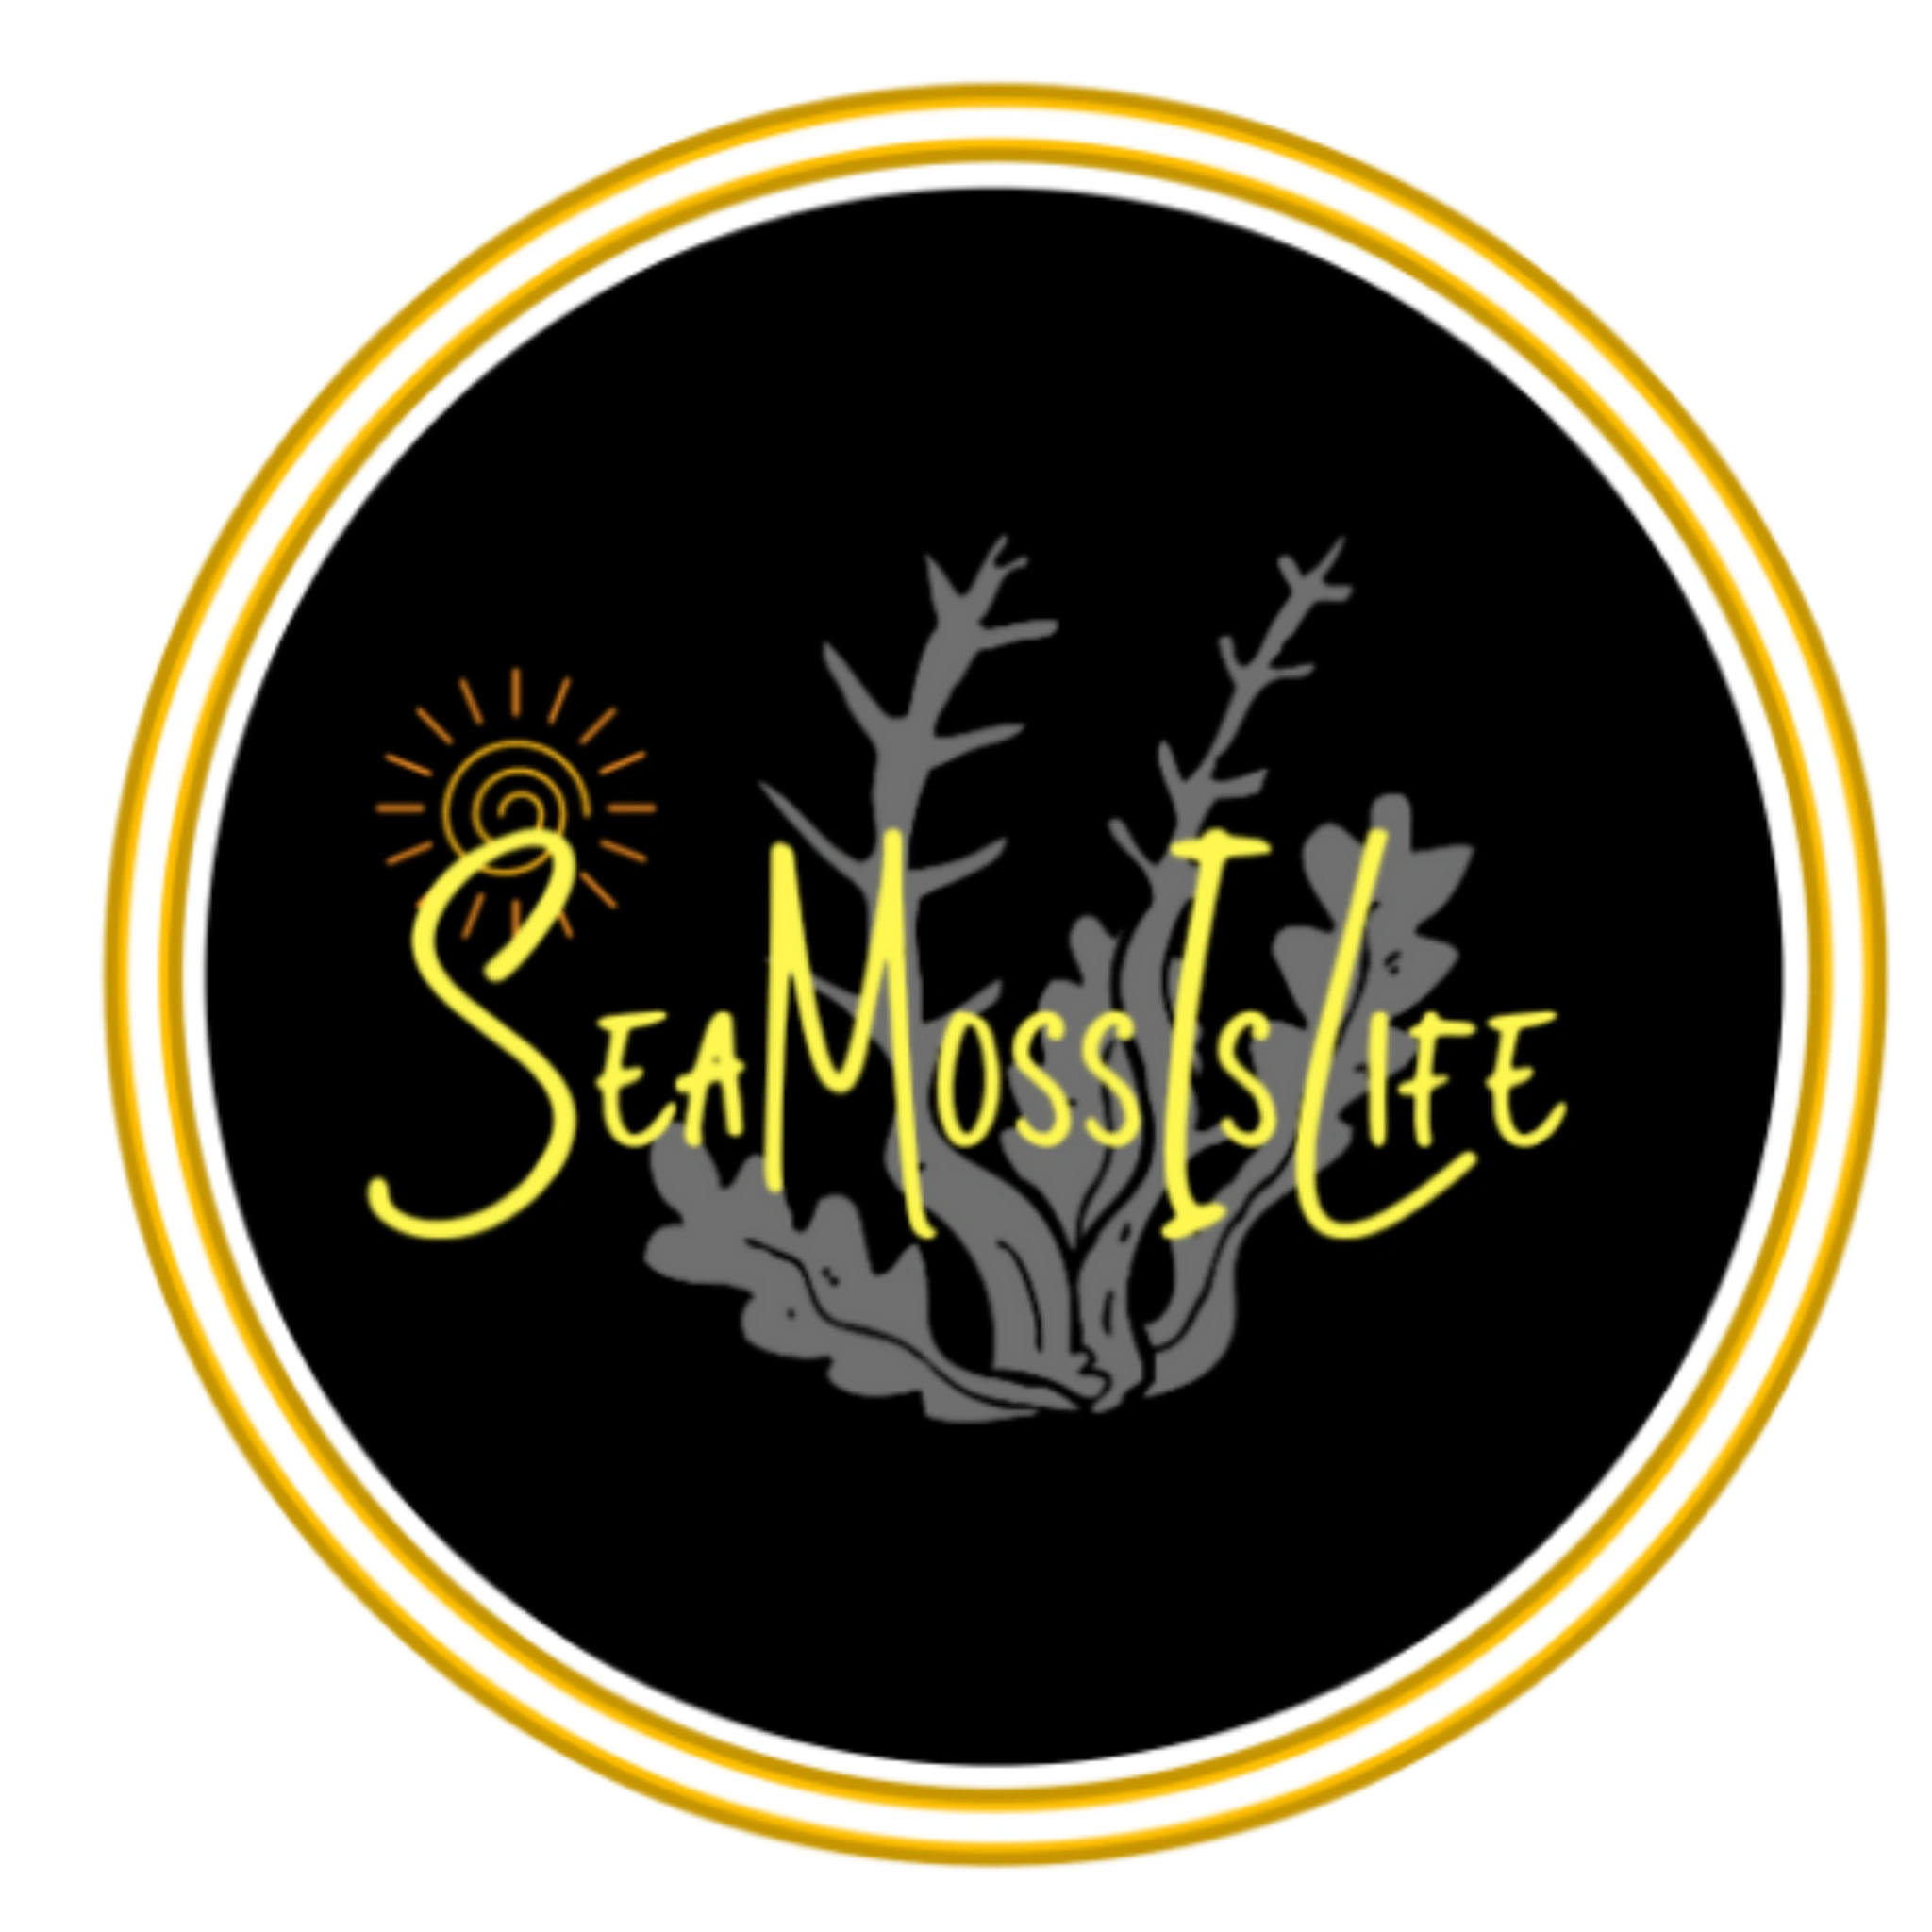 (c) Seamossislife.co.uk